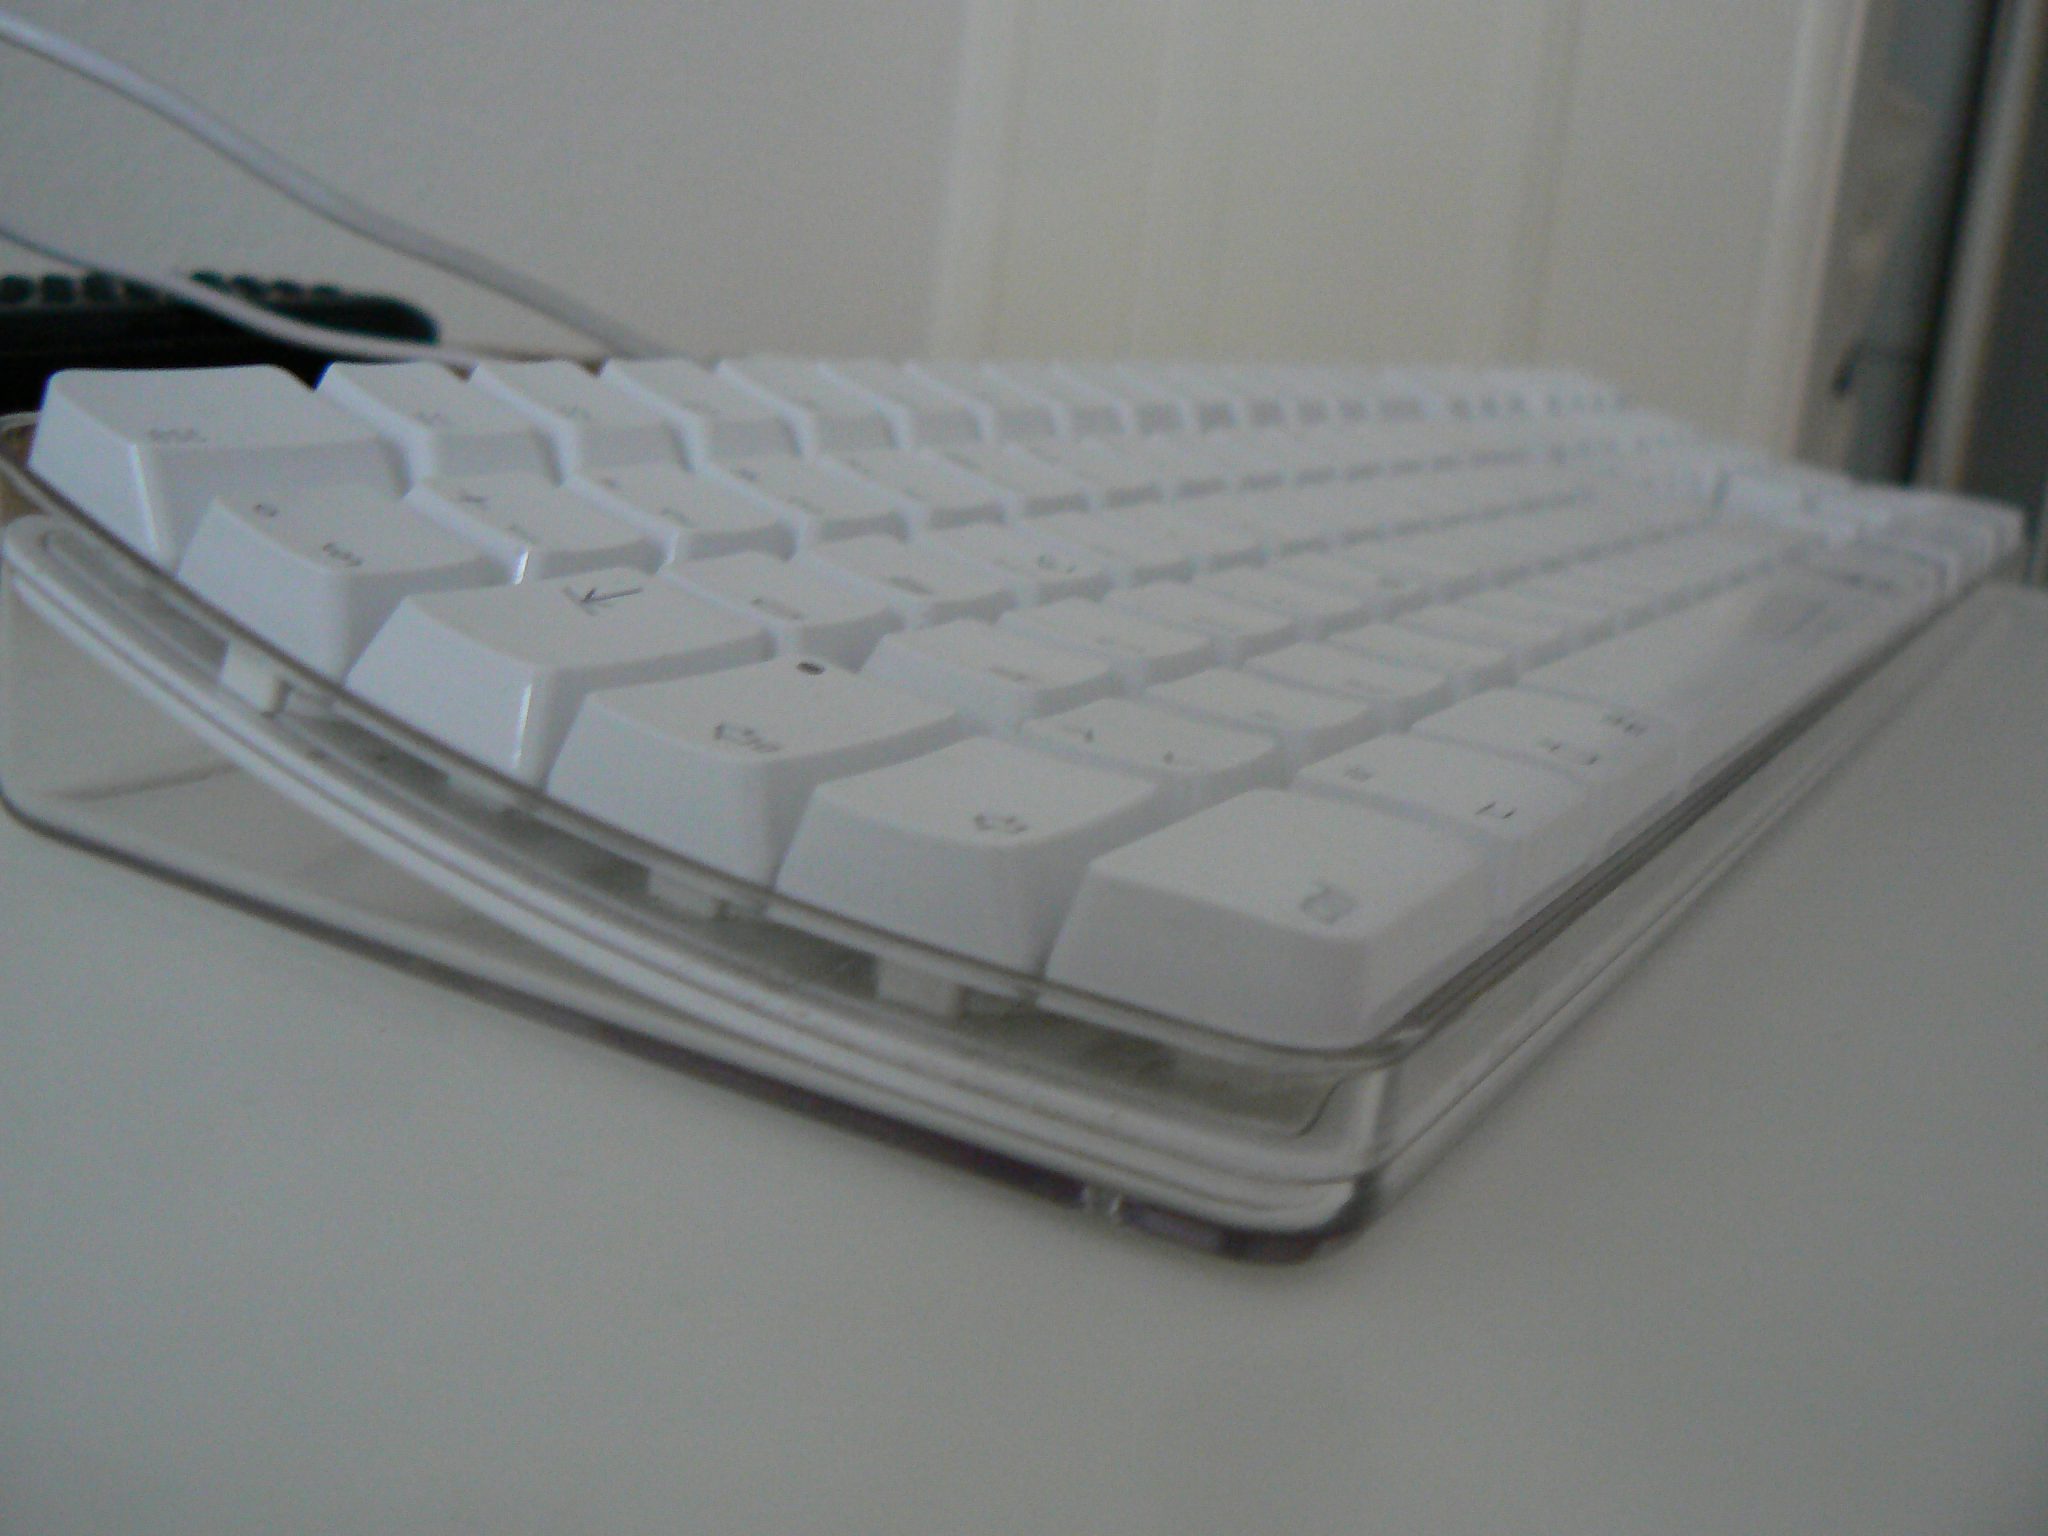 nettoyer son clavier macbook blanc